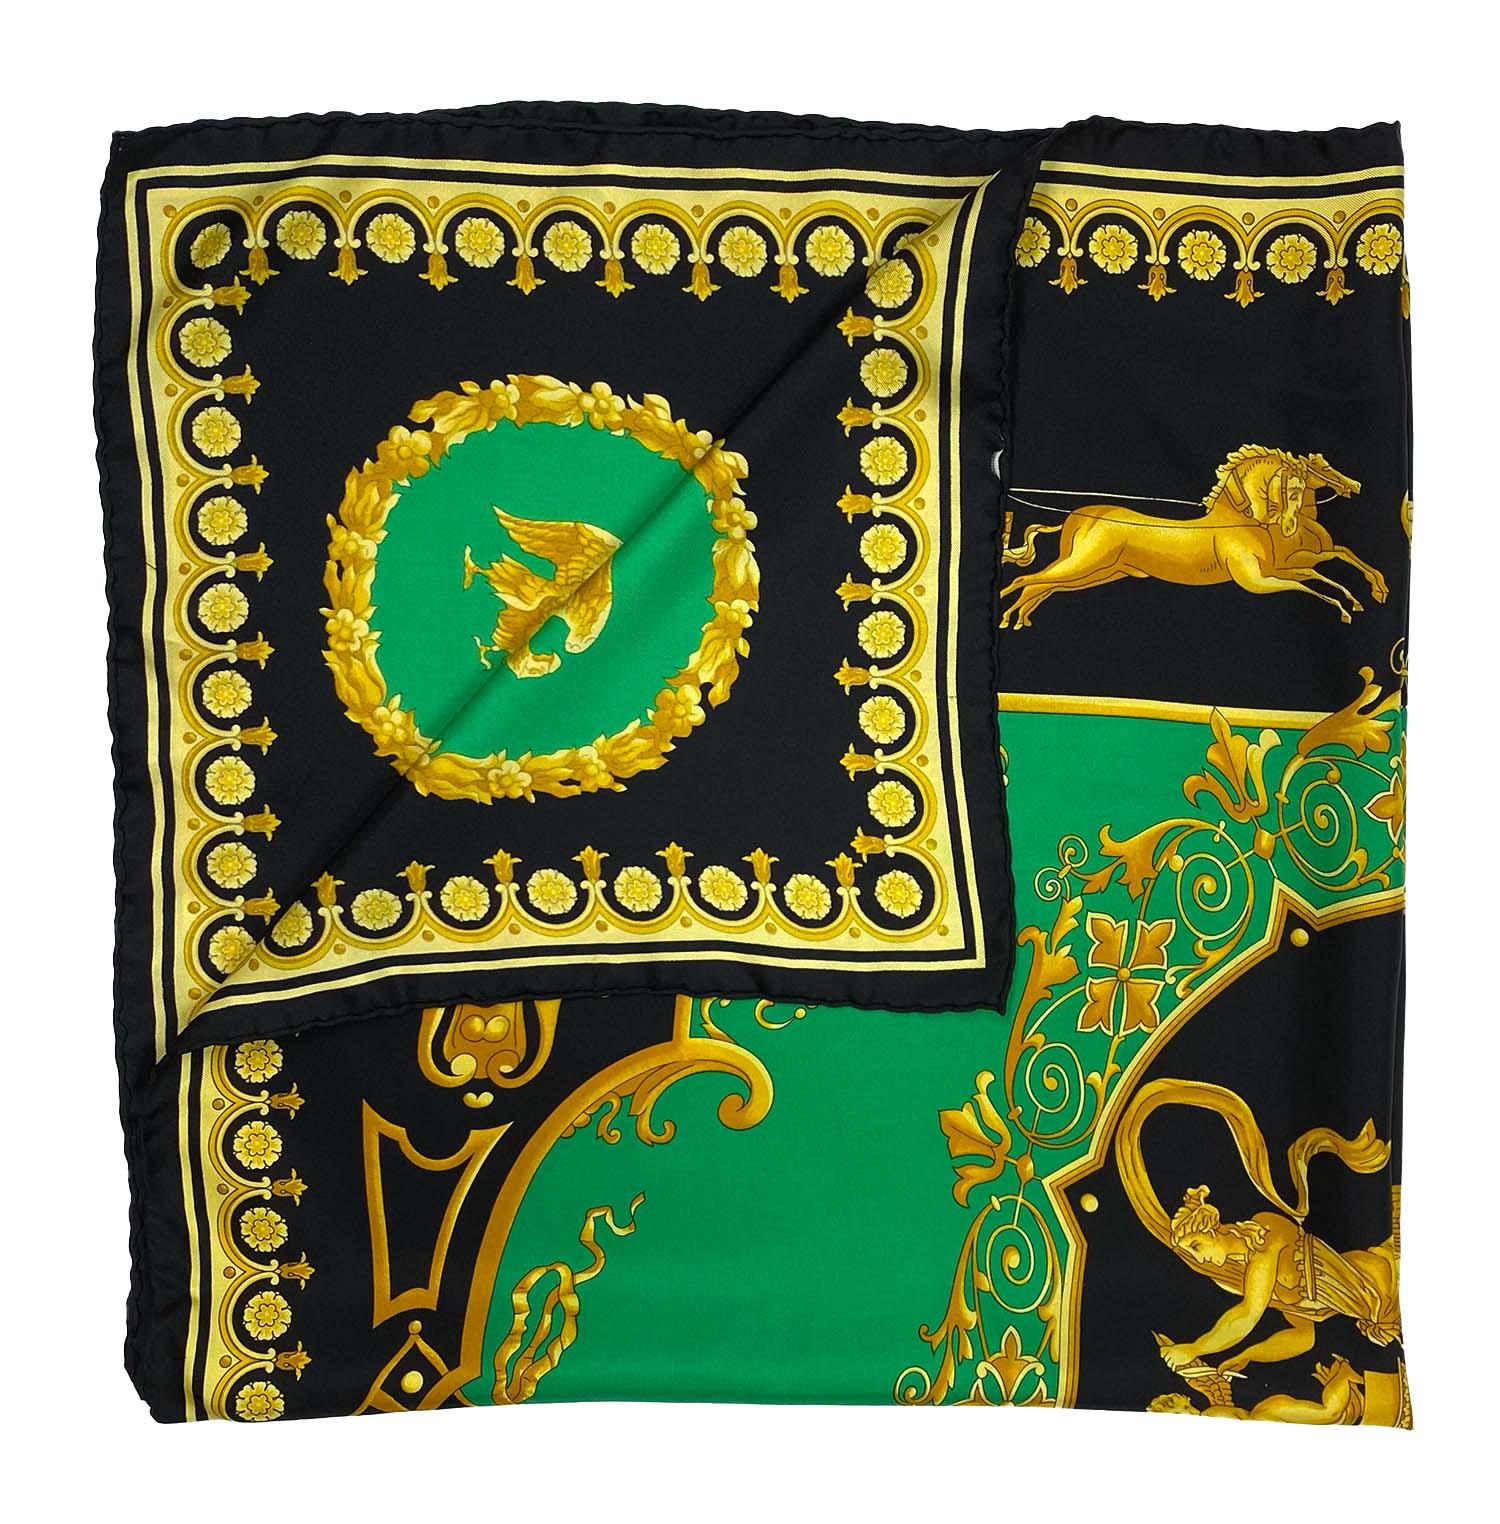 Voici un magnifique foulard carré en soie baroque Atelier Versace, conçu par Gianni Versace. Cette écharpe présente des scènes mythologiques romaines et grecques sur un fond vert vif et un motif floral baroque.